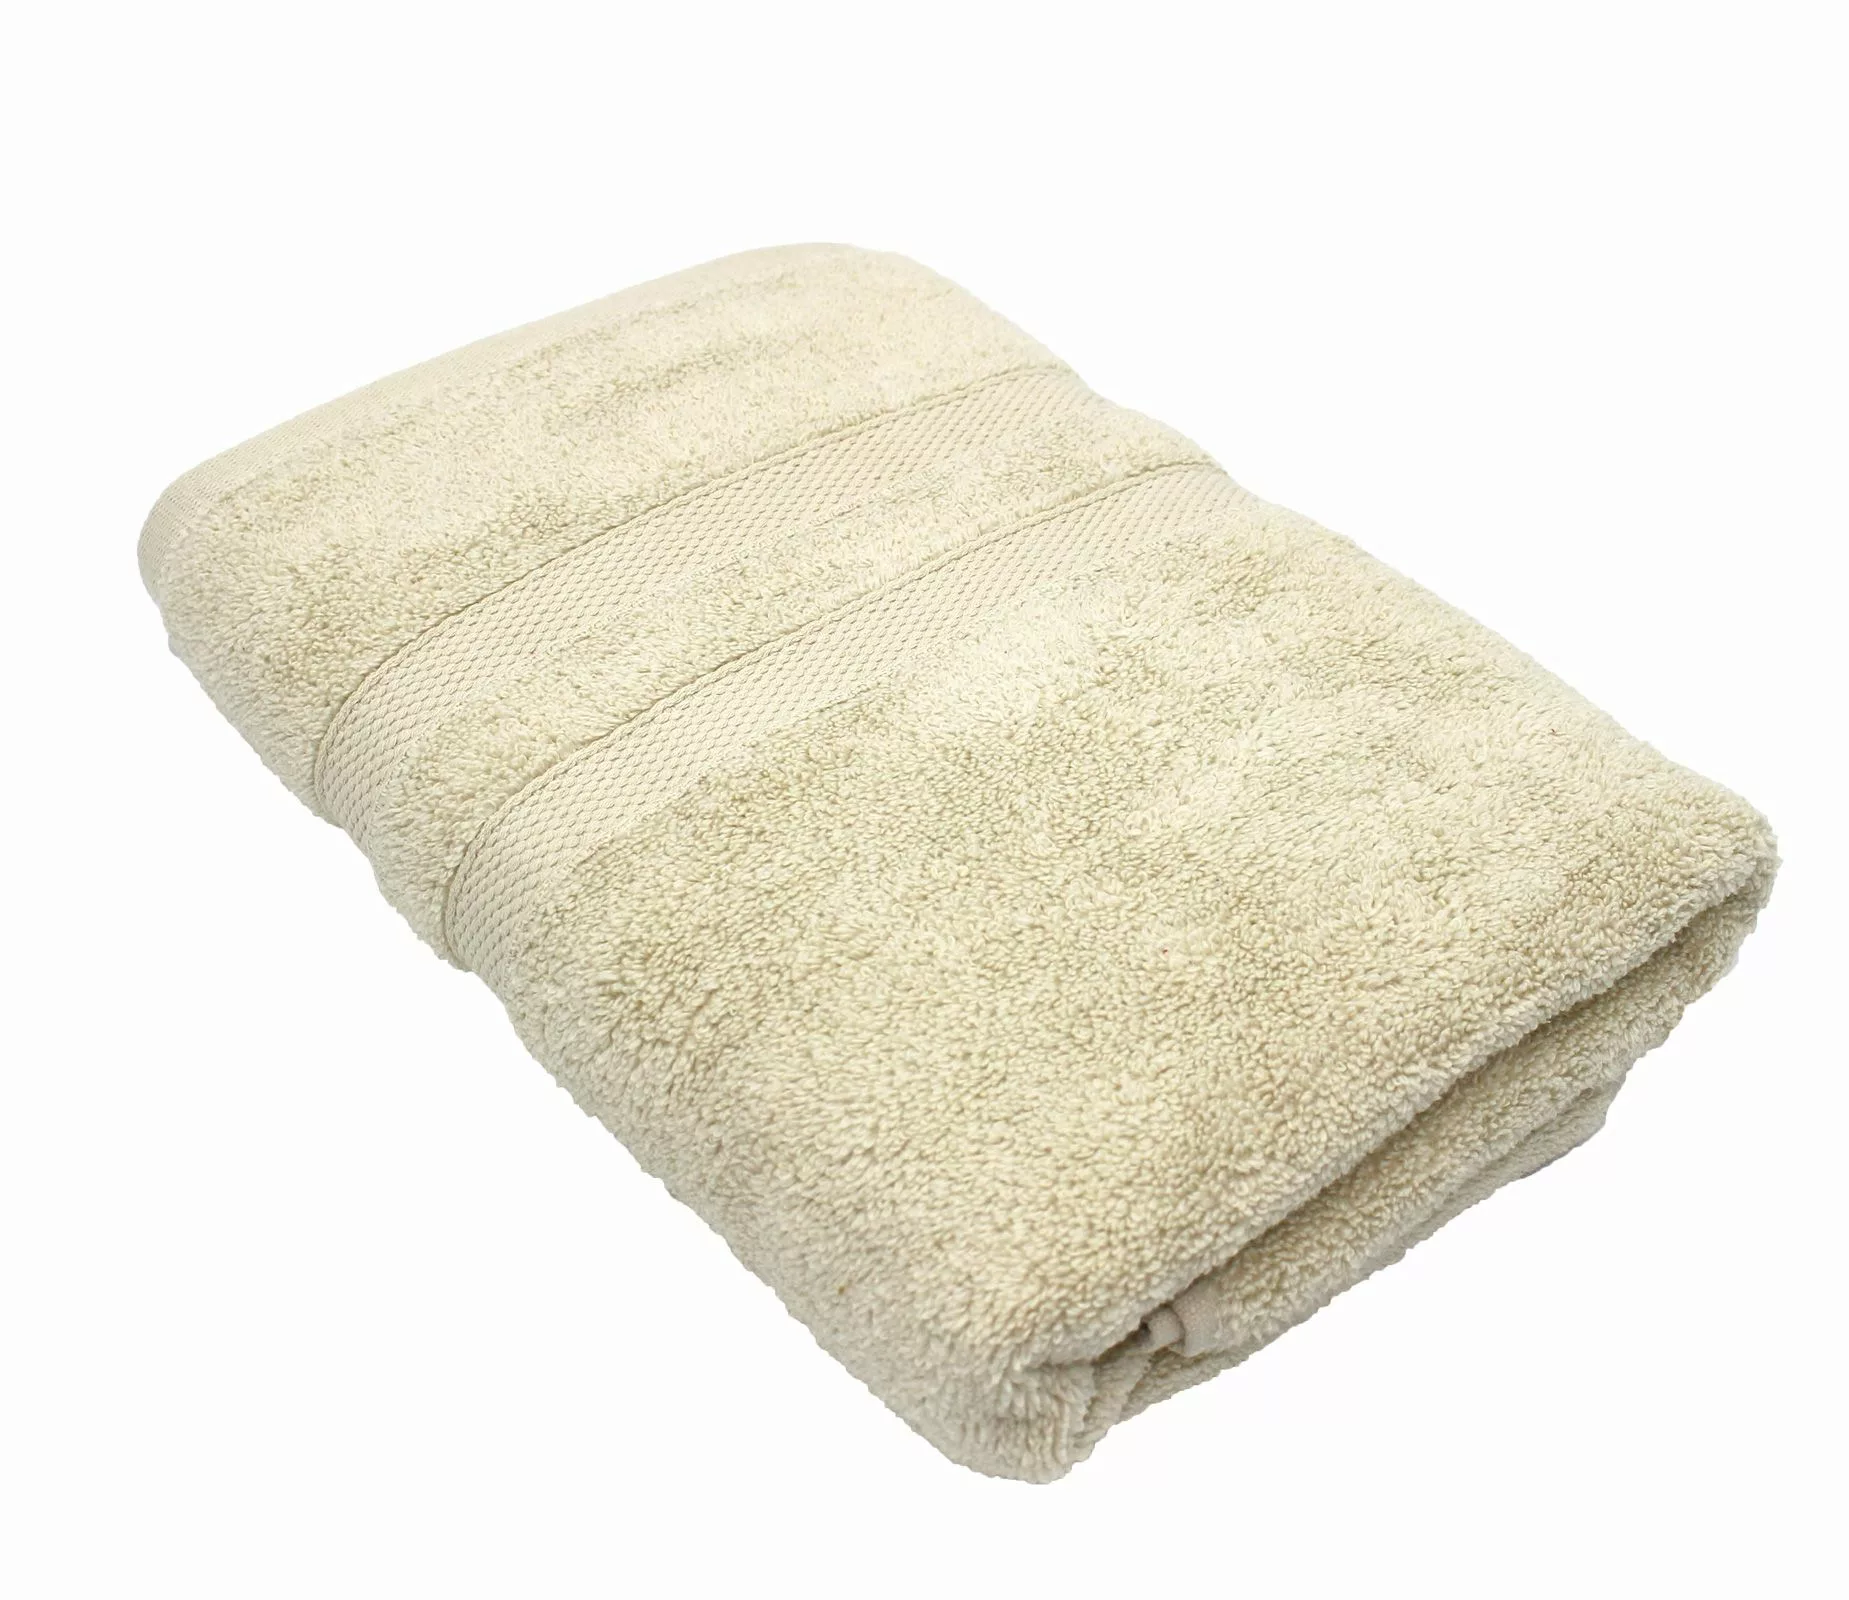 Handtuch Serie P.K. Soft Cotton 100% Baumwolle-natur-2 er Pack Handtuch 50x günstig online kaufen